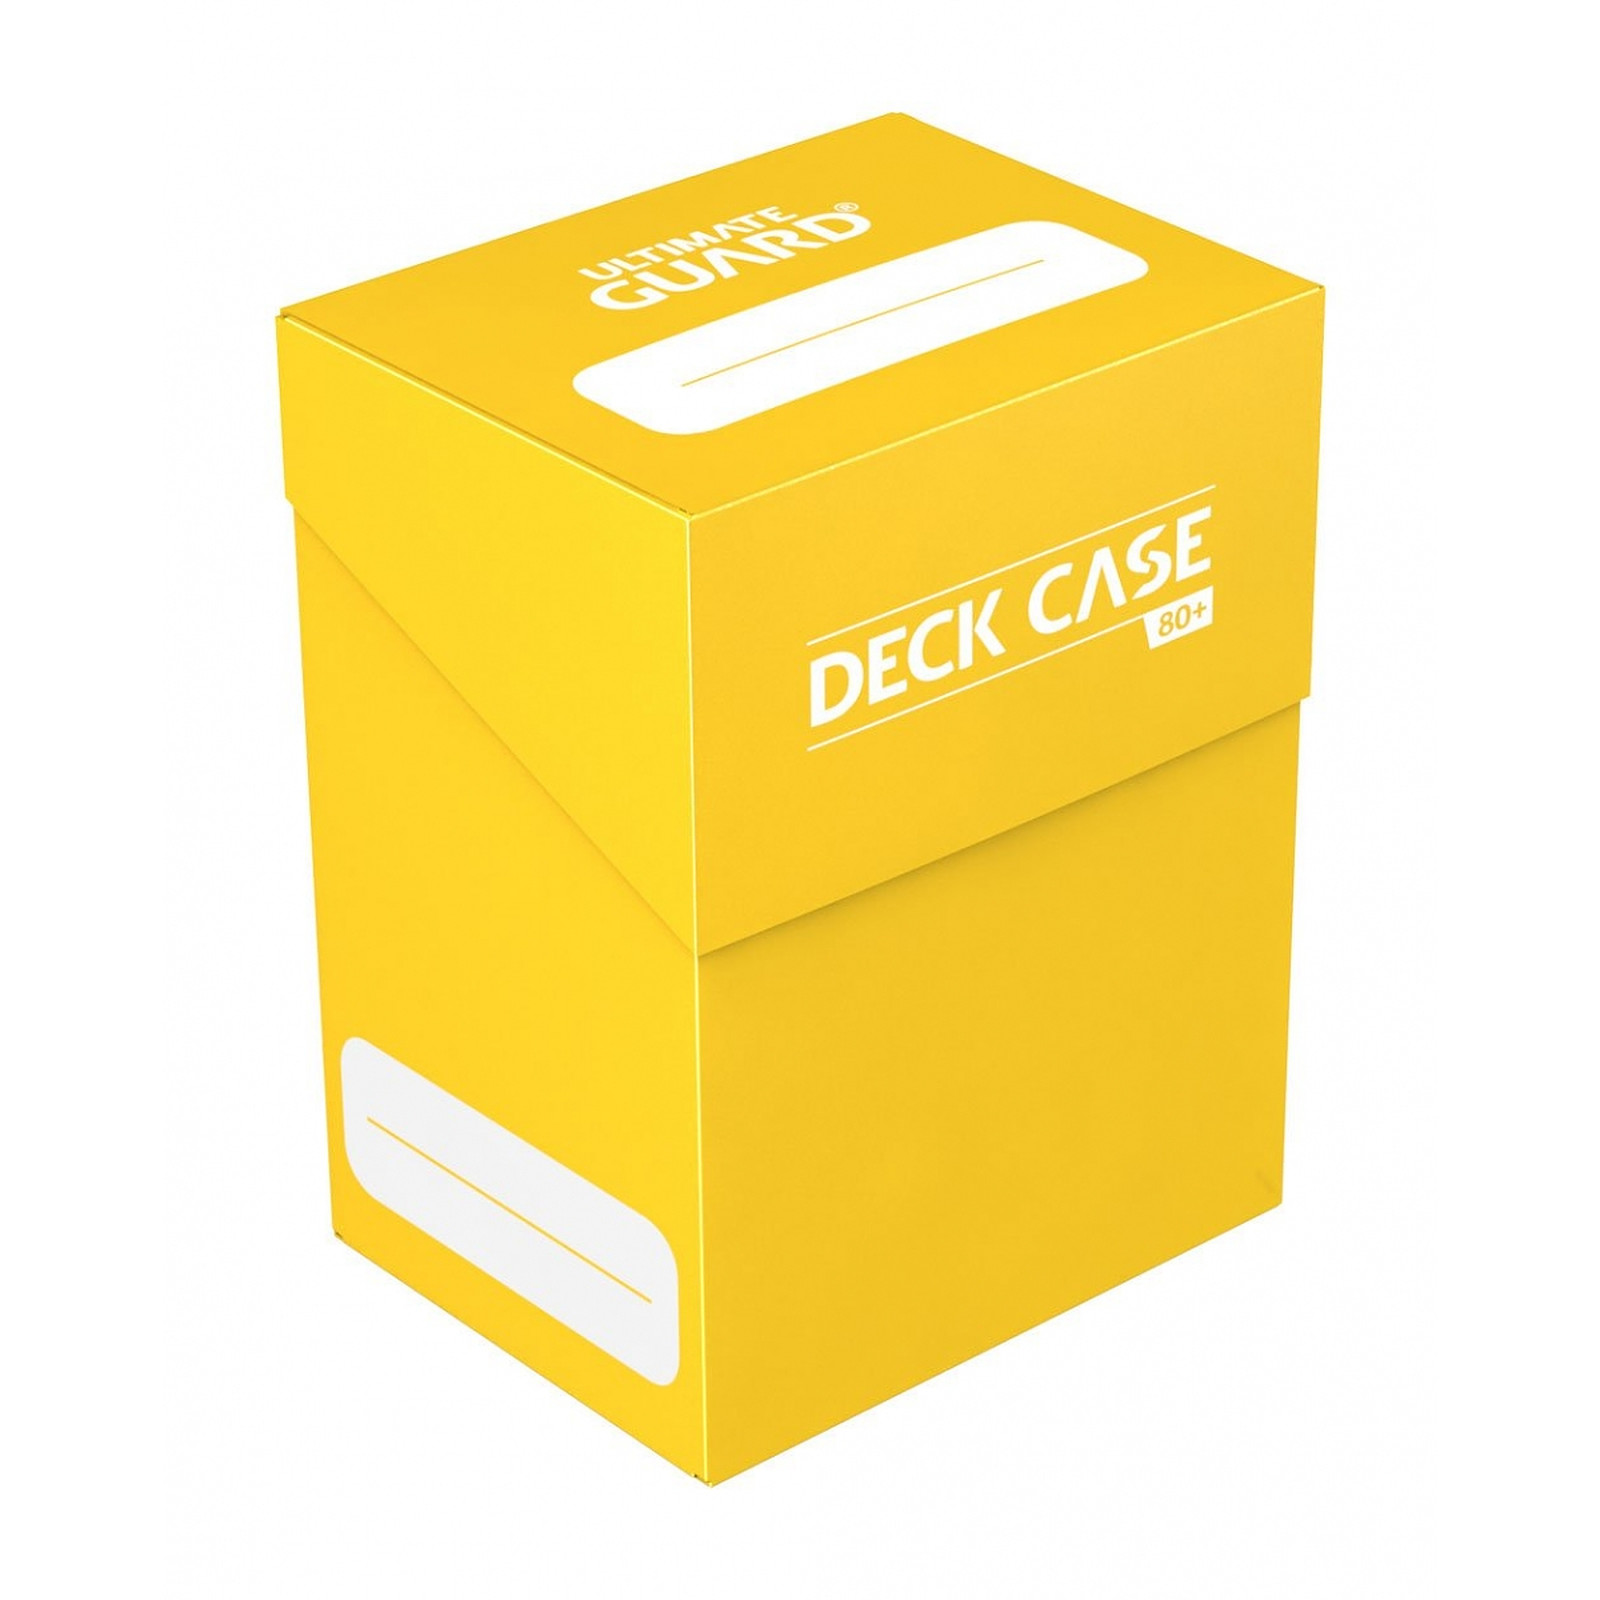 Ultimate Guard - Boite pour cartes Deck Case 80+ taille standard Jaune - Accessoire jeux Ultimate Guard